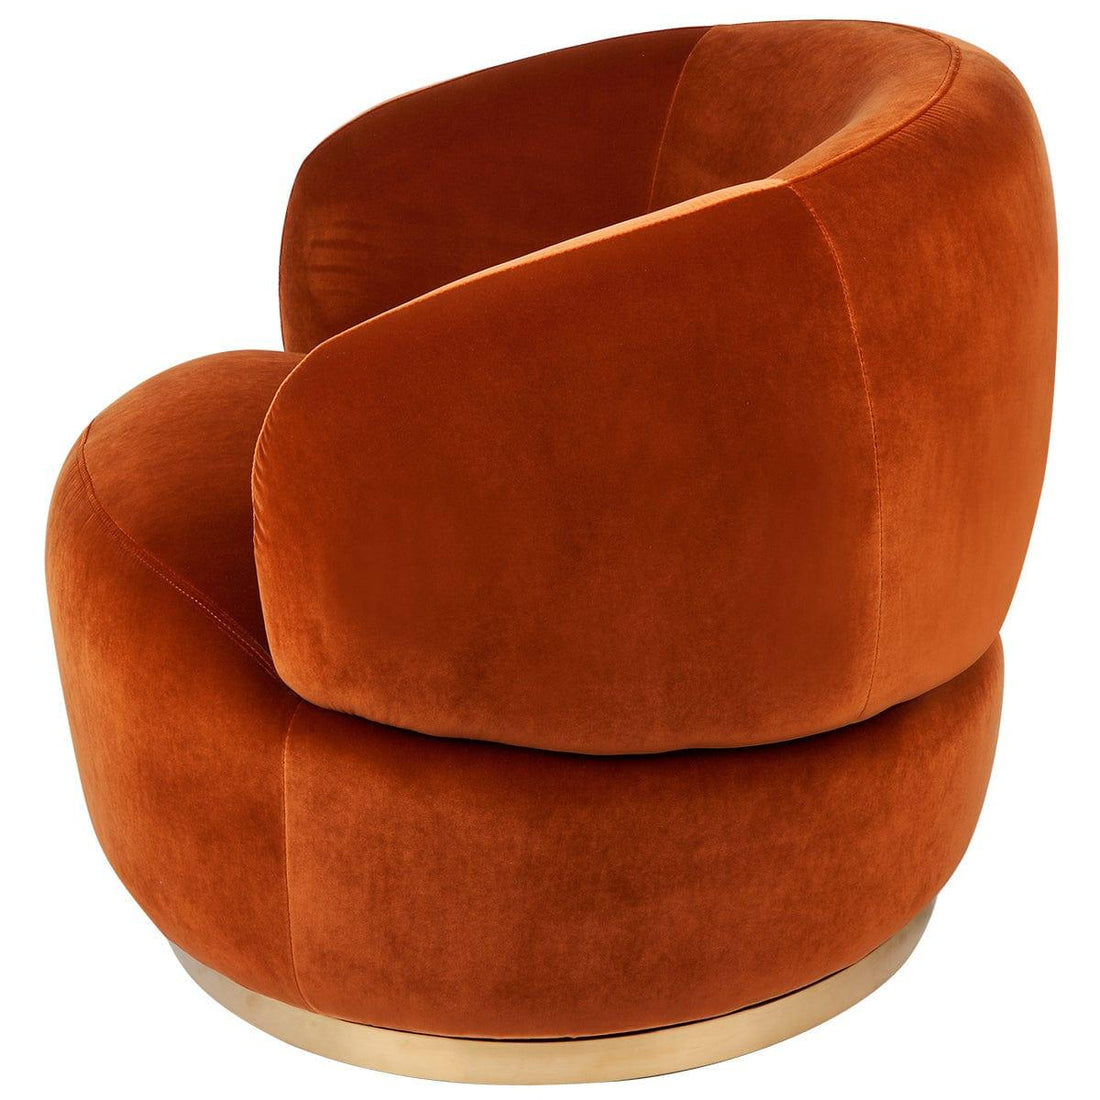 Tubby Swivel Occasional Chair - Caramel Velvet.